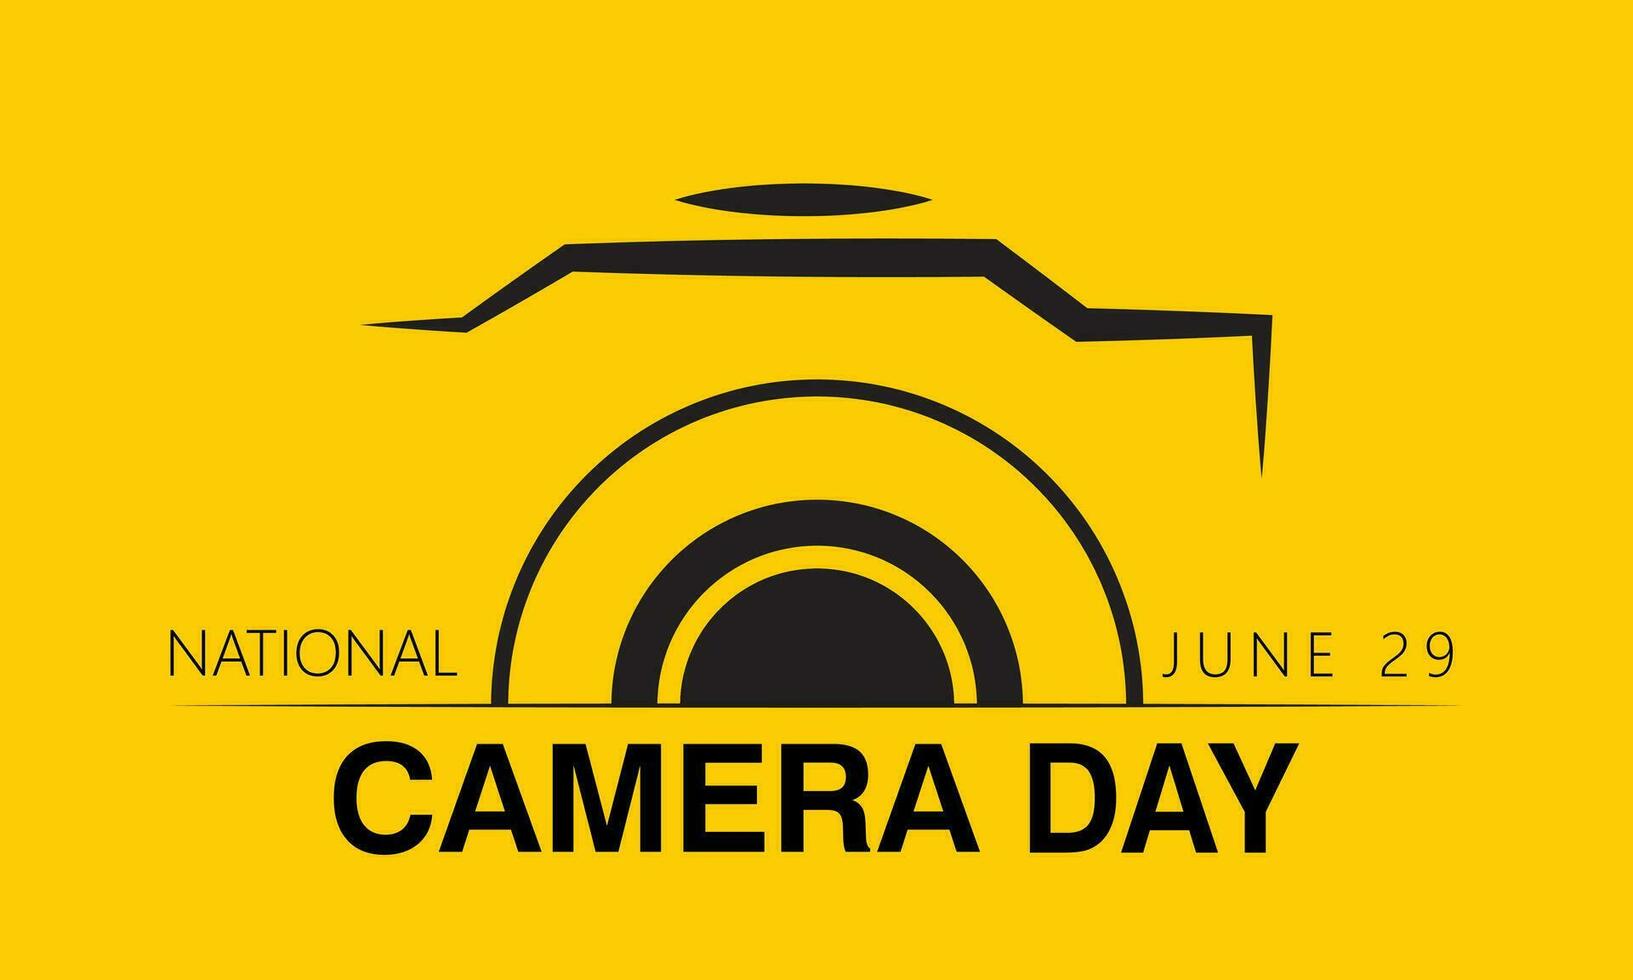 nationale caméra journée bien pour nationale caméra journée fête. vecteur illustration